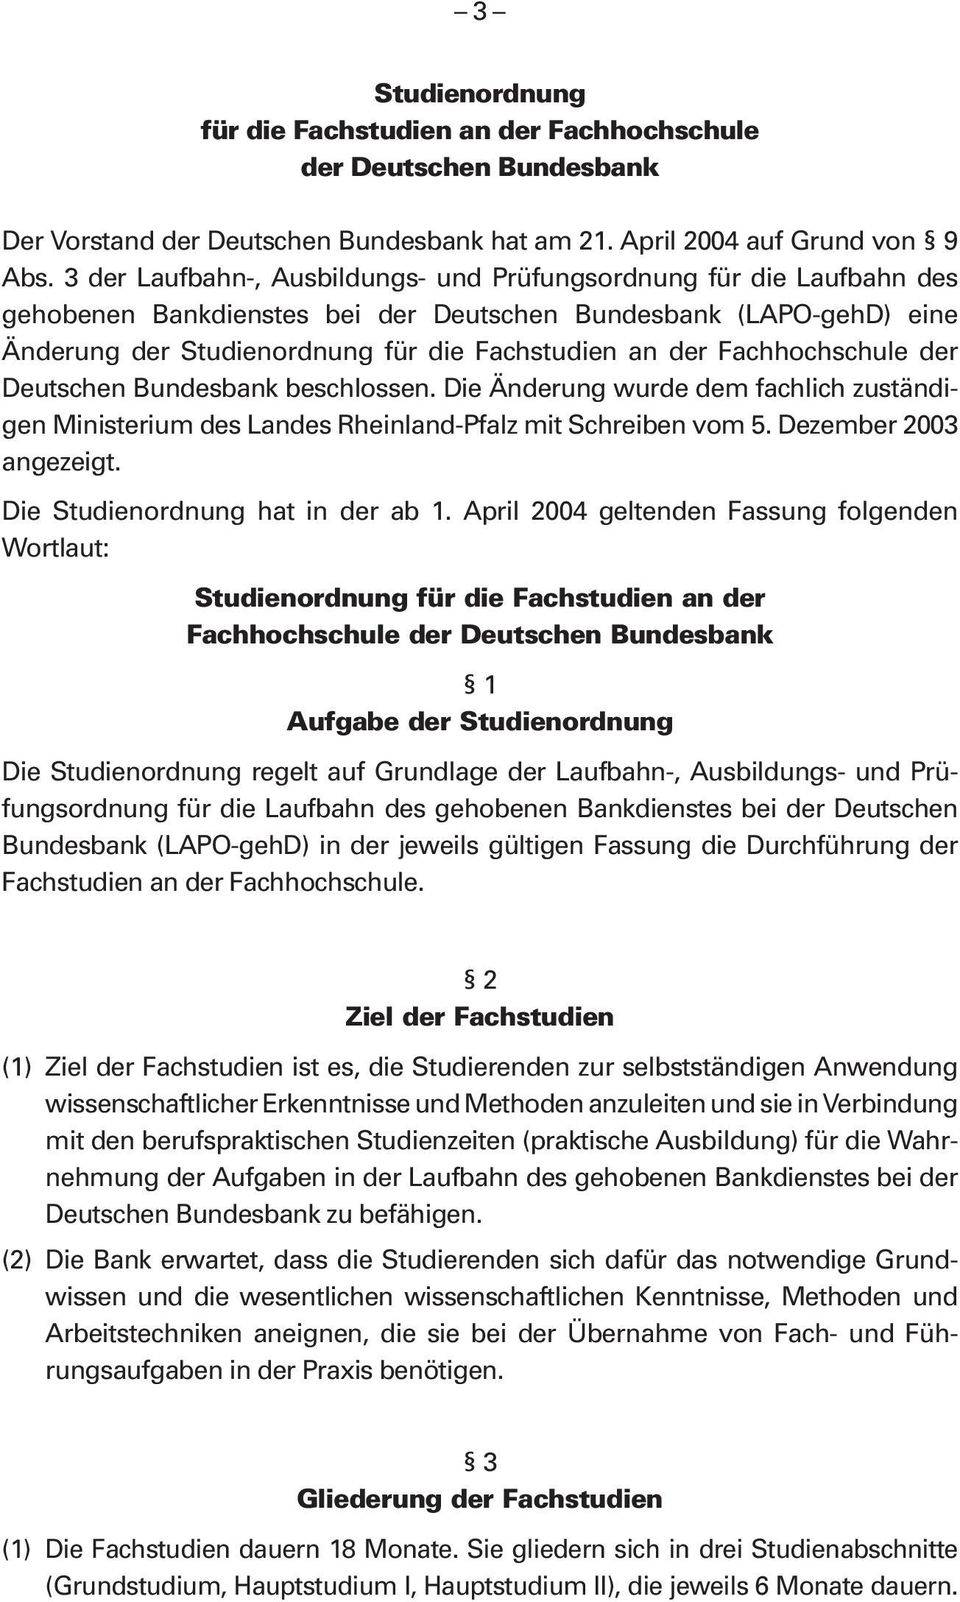 Fachhochschule der Deutschen Bundesbank beschlossen. Die Änderung wurde dem fachlich zuständigen Ministerium des Landes Rheinland-Pfalz mit Schreiben vom 5. Dezember 2003 angezeigt.